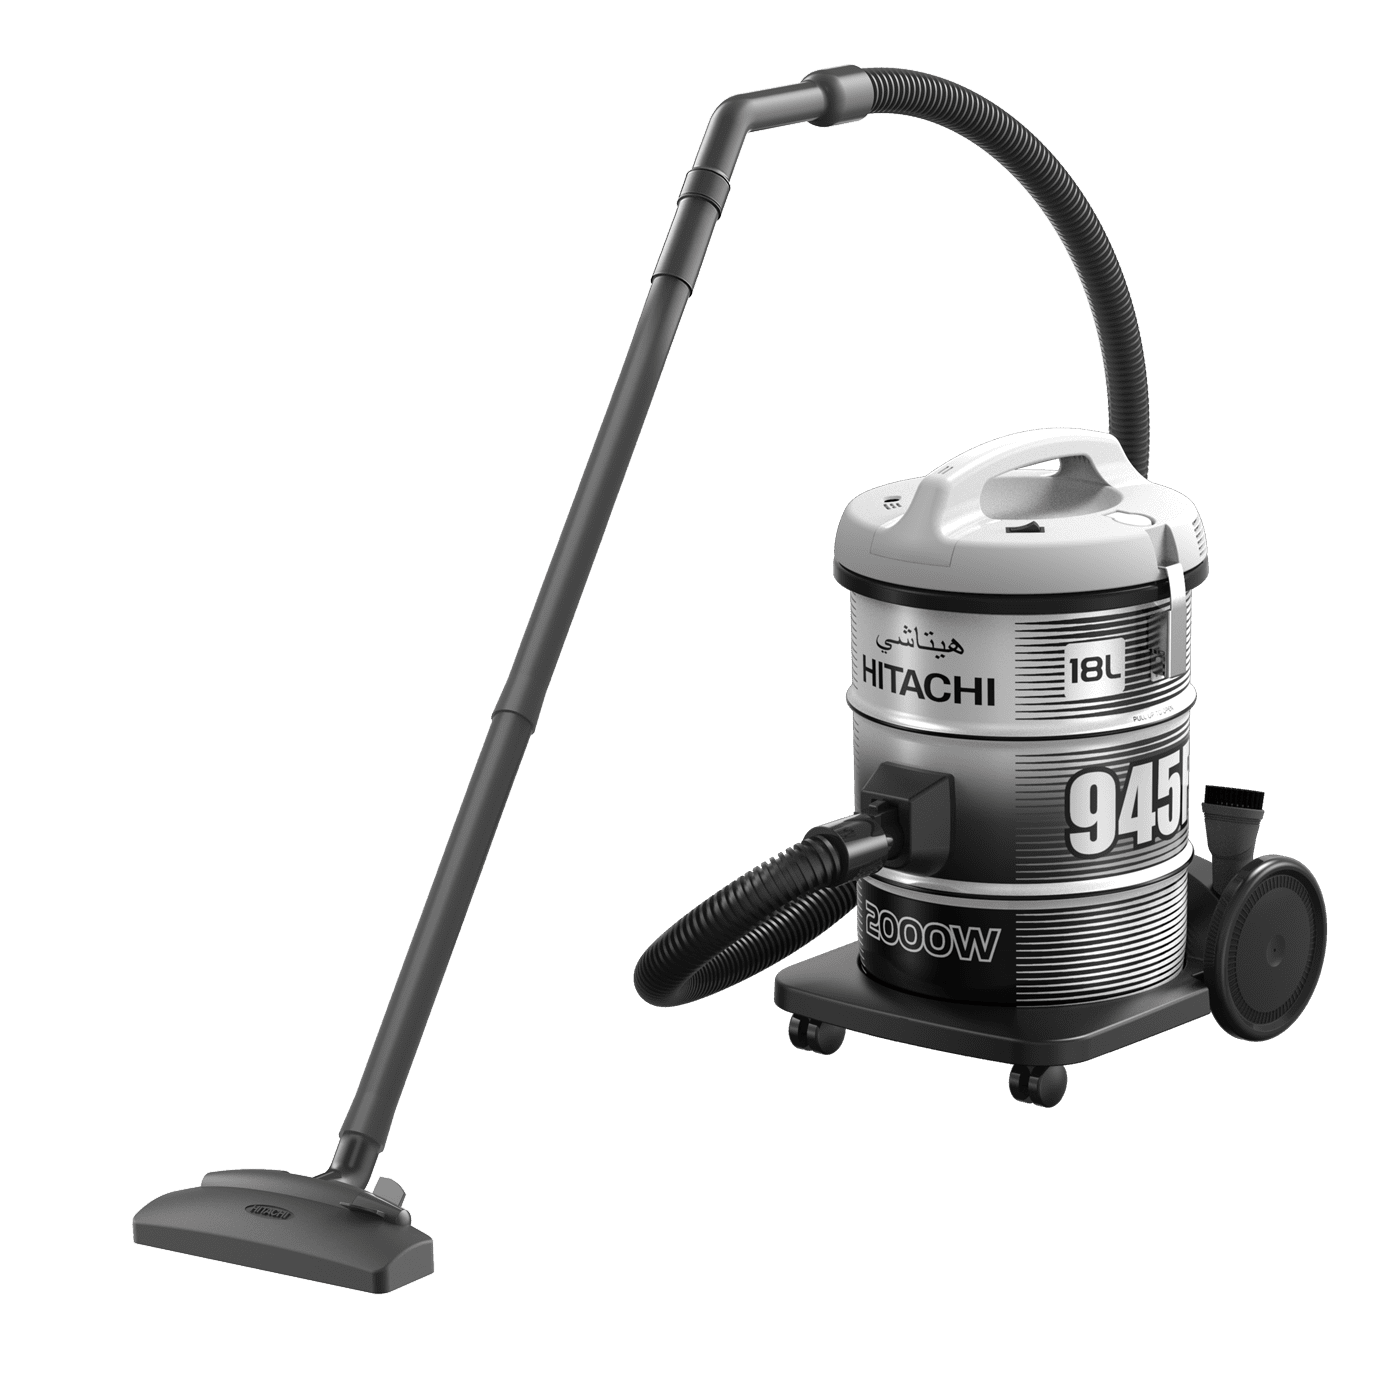 Hitachi Drum Vacuum Cleaner 2000w 18 liters.